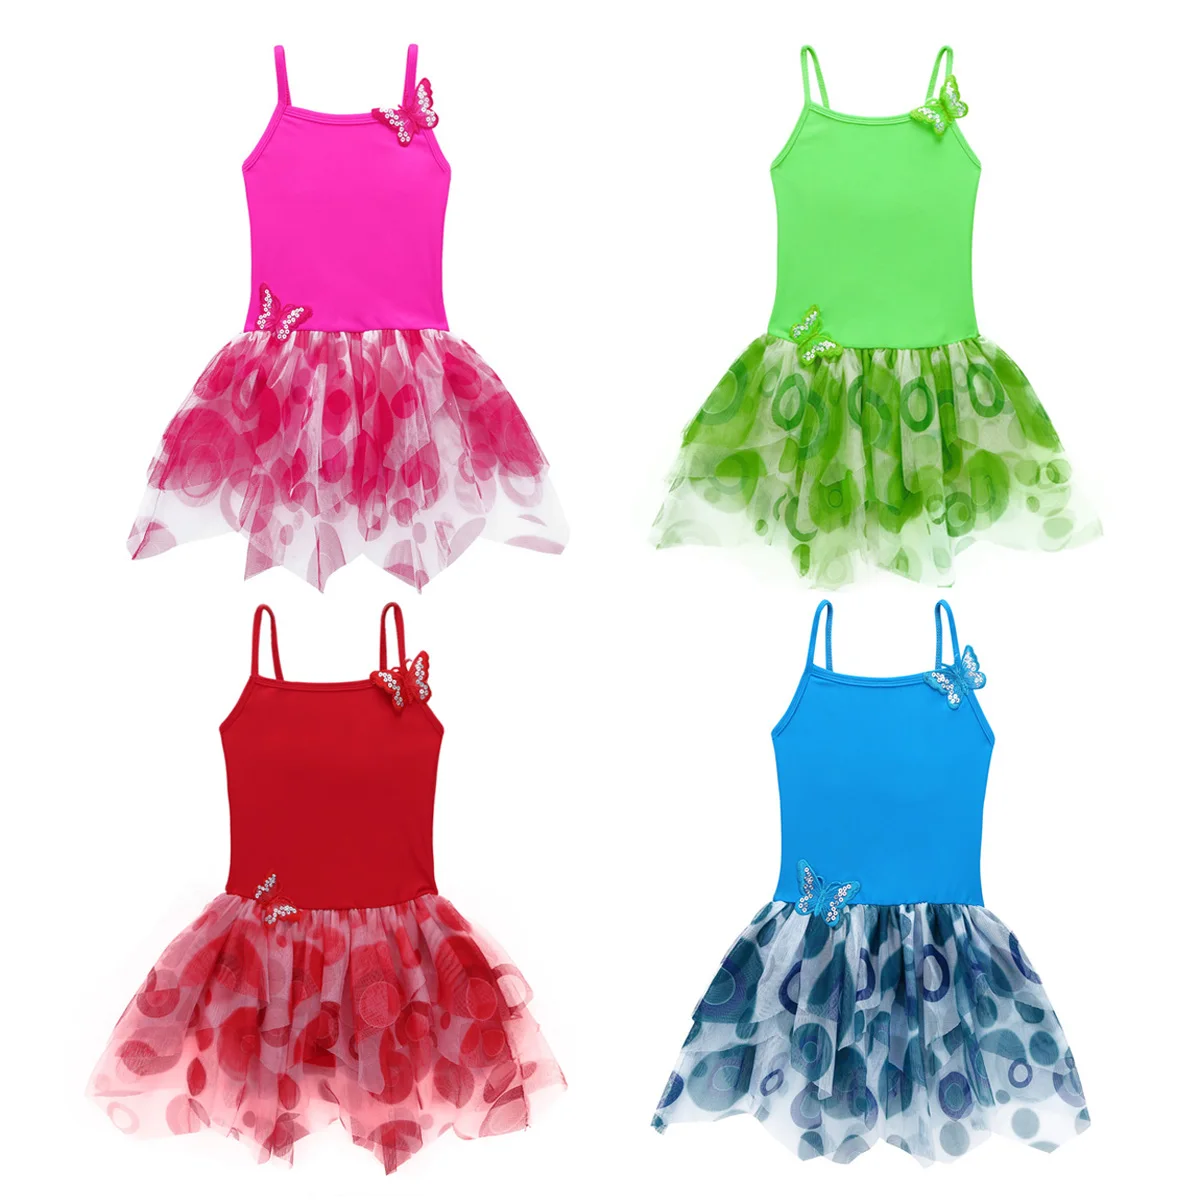 Tiaobug для маленькой девочки юбка-пачка трико, платье на тонких бретелях Апликация в виде бабочки тренировочная одежда для занятий гимнастикой, детский танцевальный сценический костюм